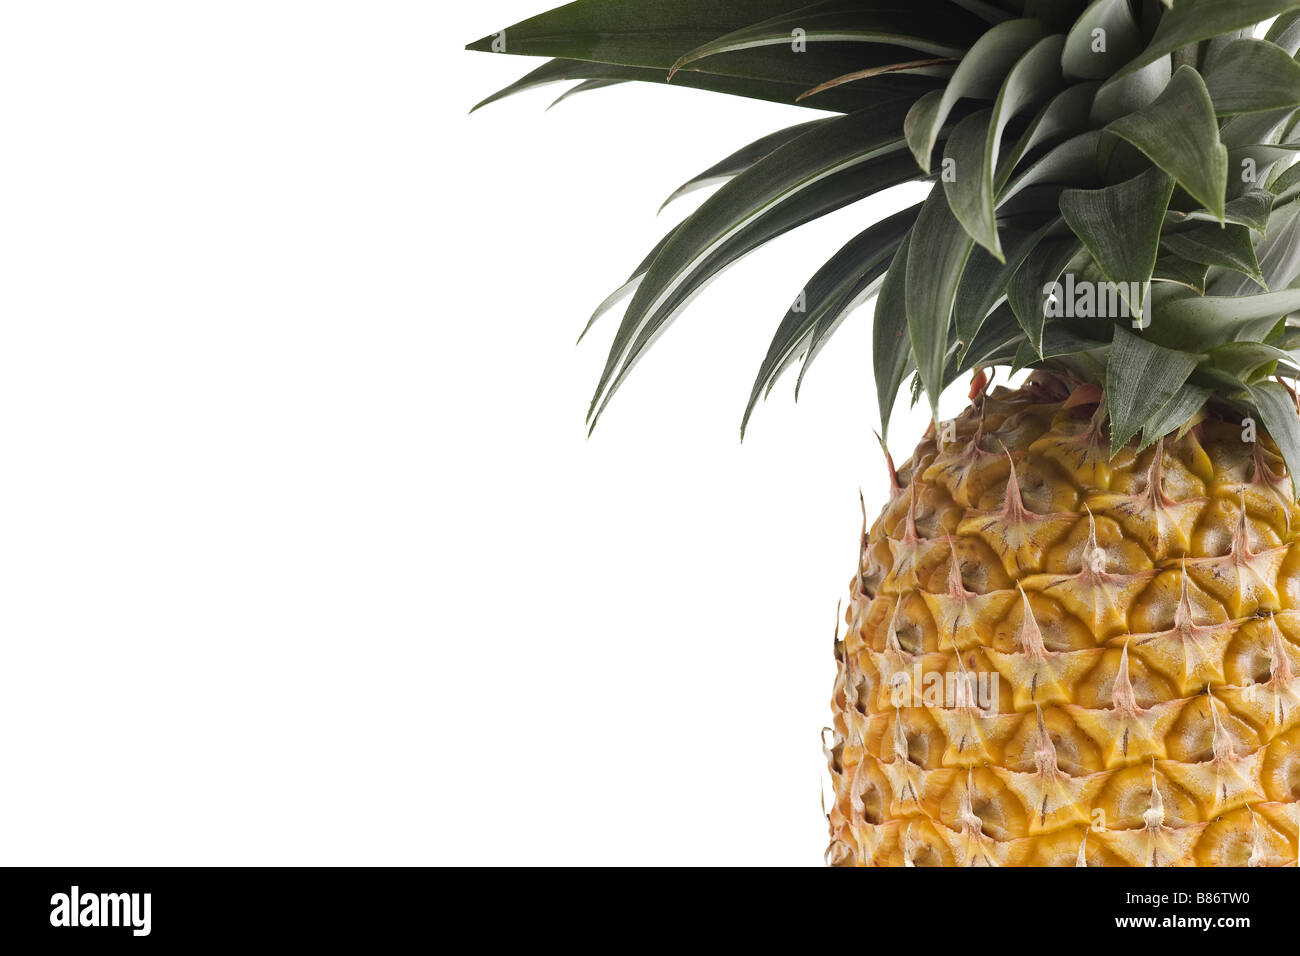 fresh Florida pineapple isolated on white background Stock Photo